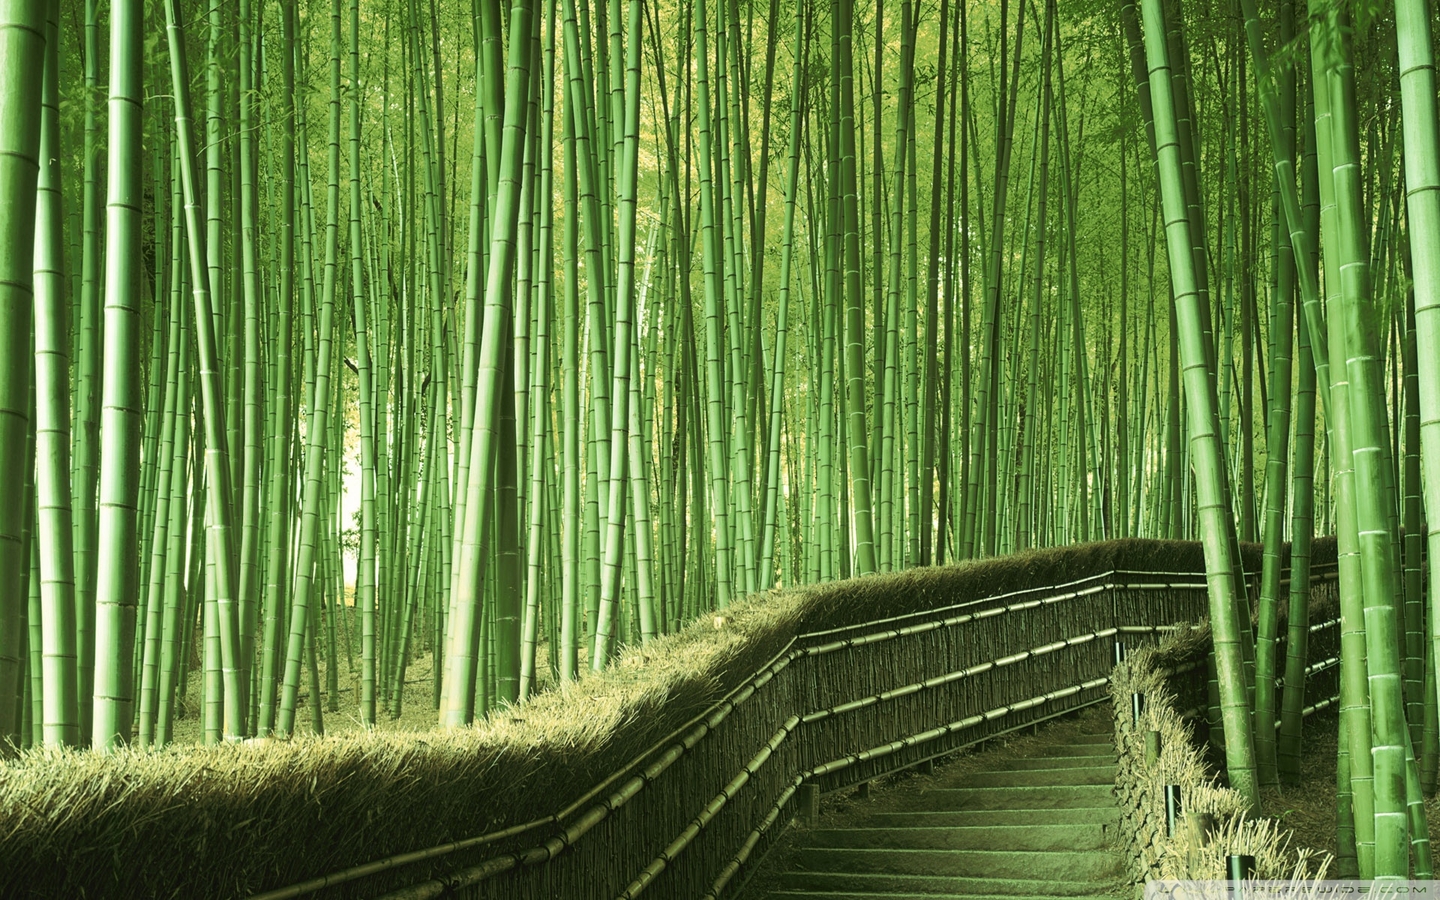  绿色竹林高清壁纸 